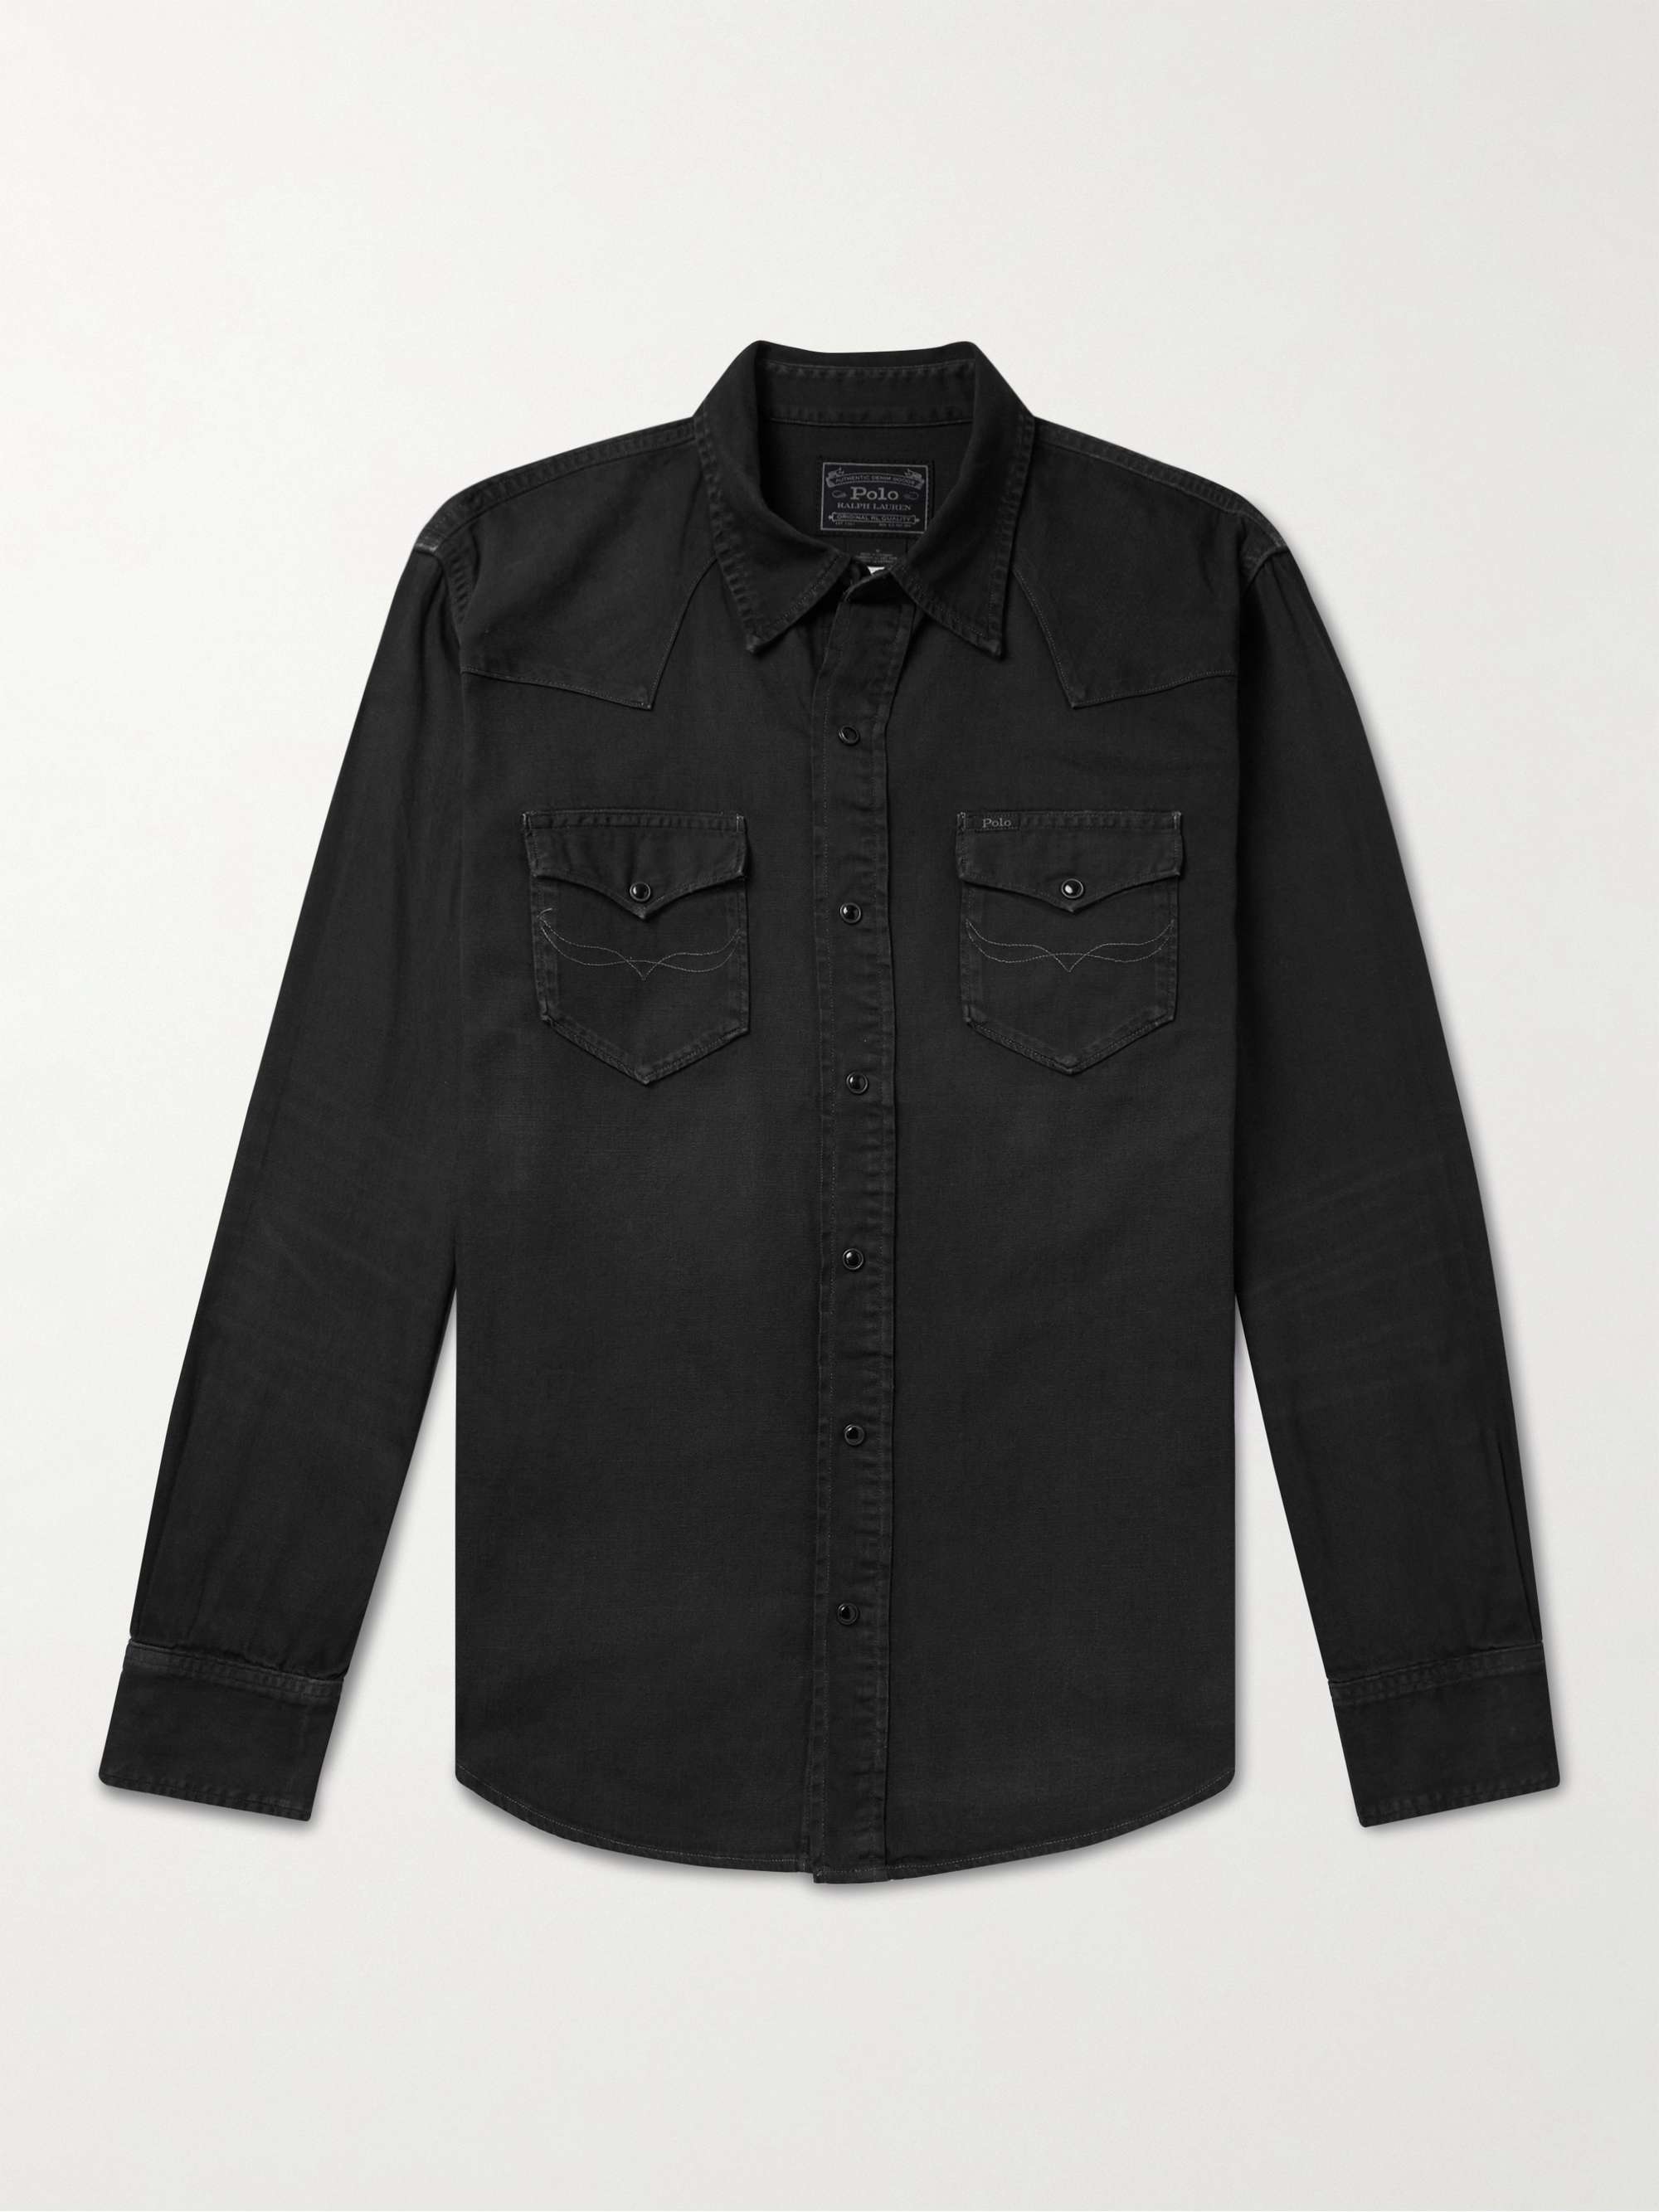 POLO RALPH LAUREN Garment-Dyed Denim Western Shirt for Men | MR PORTER